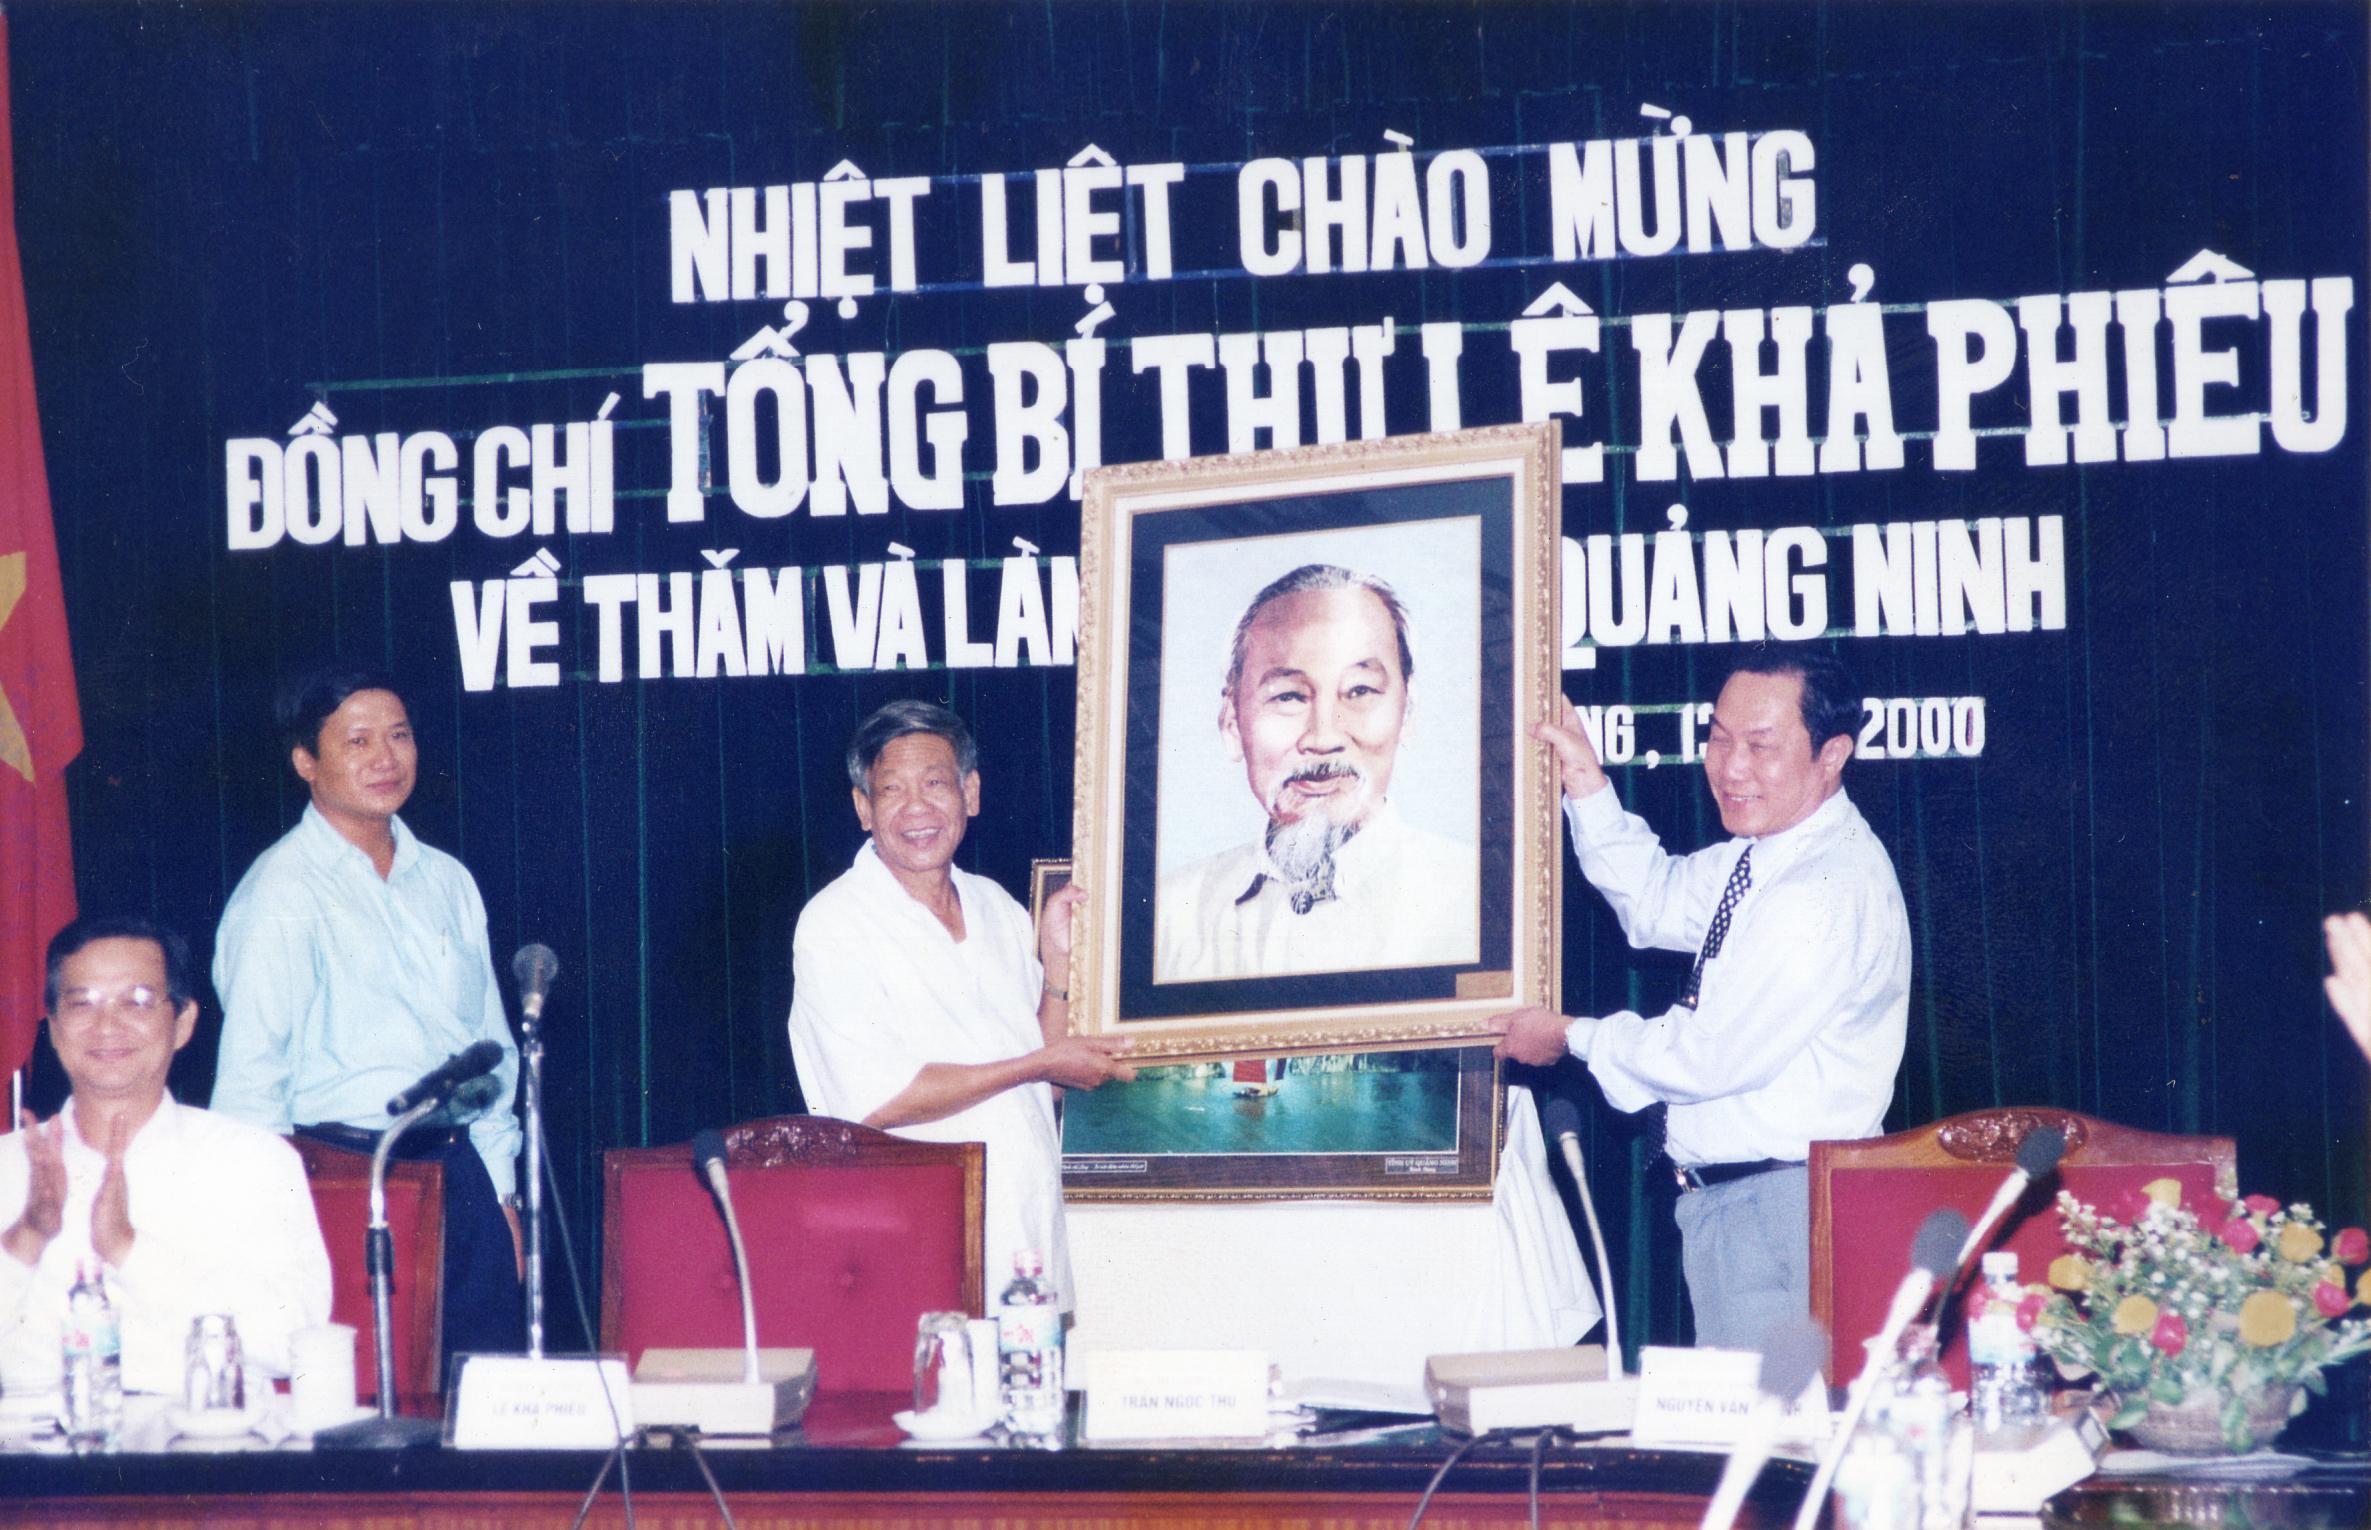 Đồng chí Tổng Bí thư Lê Khả Phiêu tặng tỉnh Quảng Ninh tấm ảnh chân dung Chủ tịch Hồ Chí Minh nhân chuyến thăm và làm việc tại tỉnh vào tháng 10/2000.